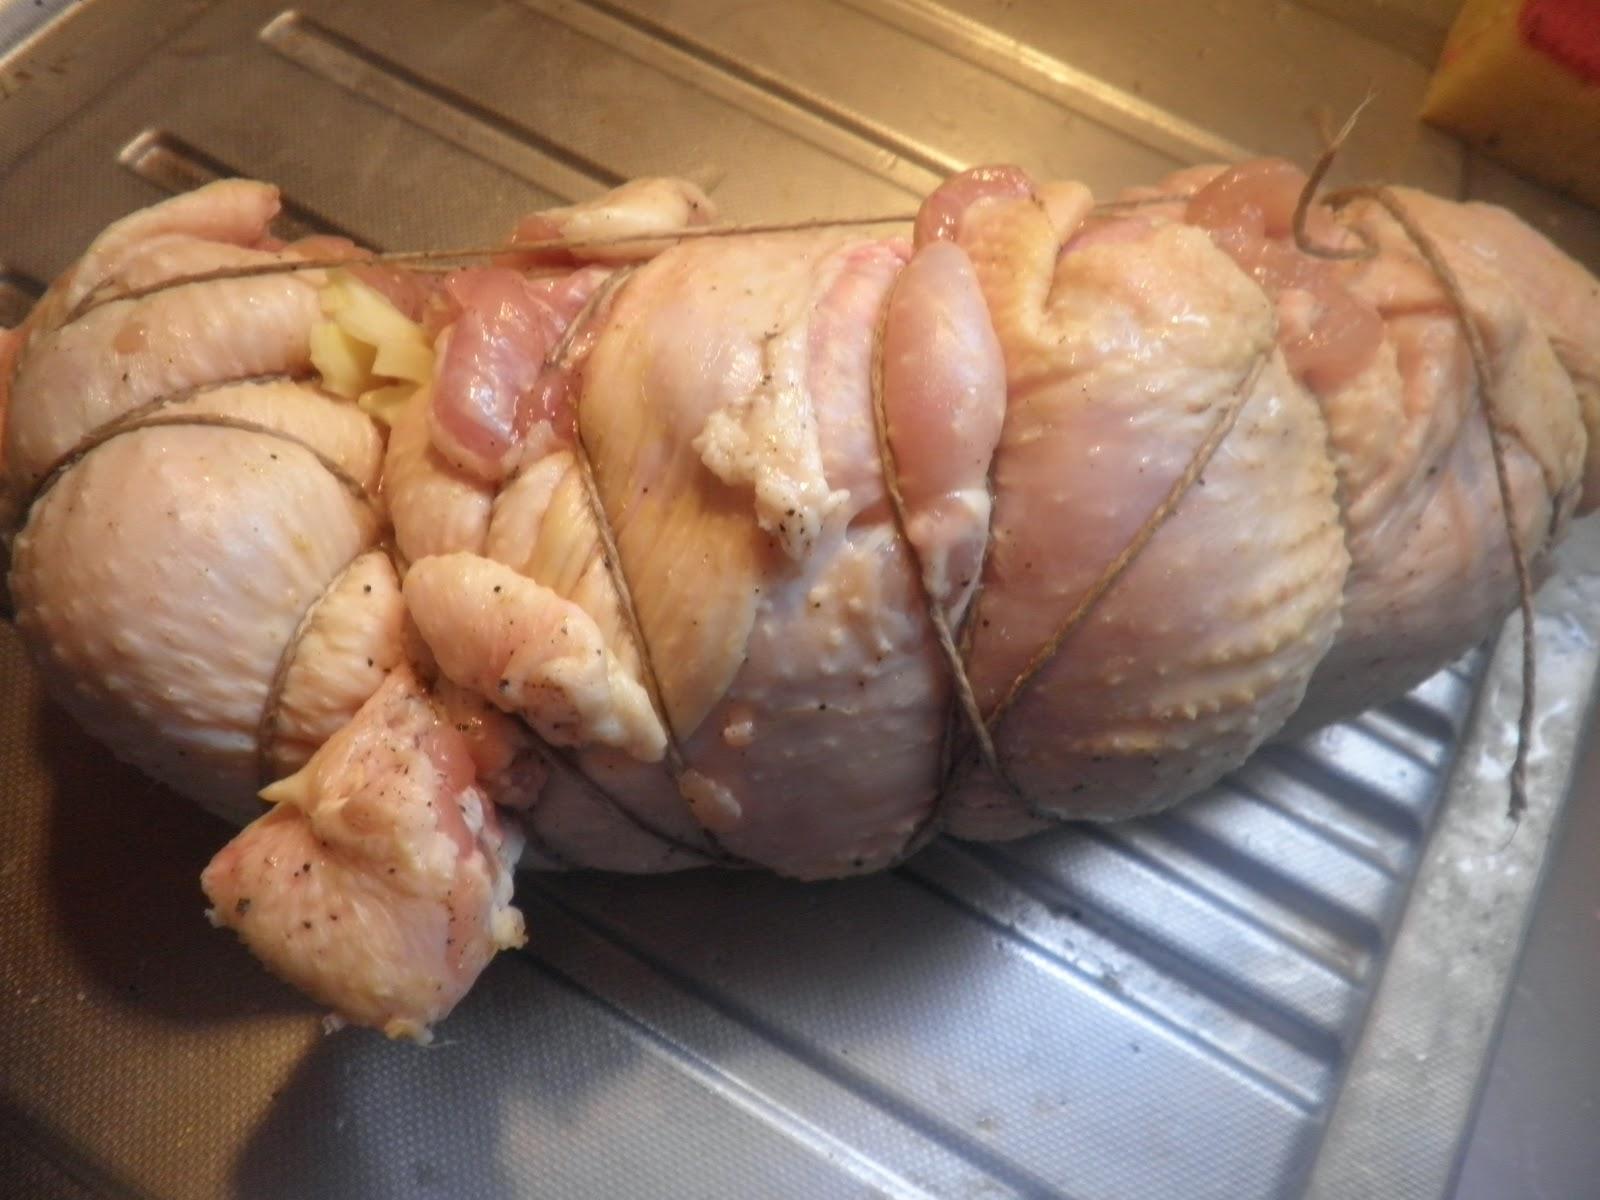 ΕΦΕΤ ανάκληση: Ανακαλείται κοτόπουλο με σαλμονέλα